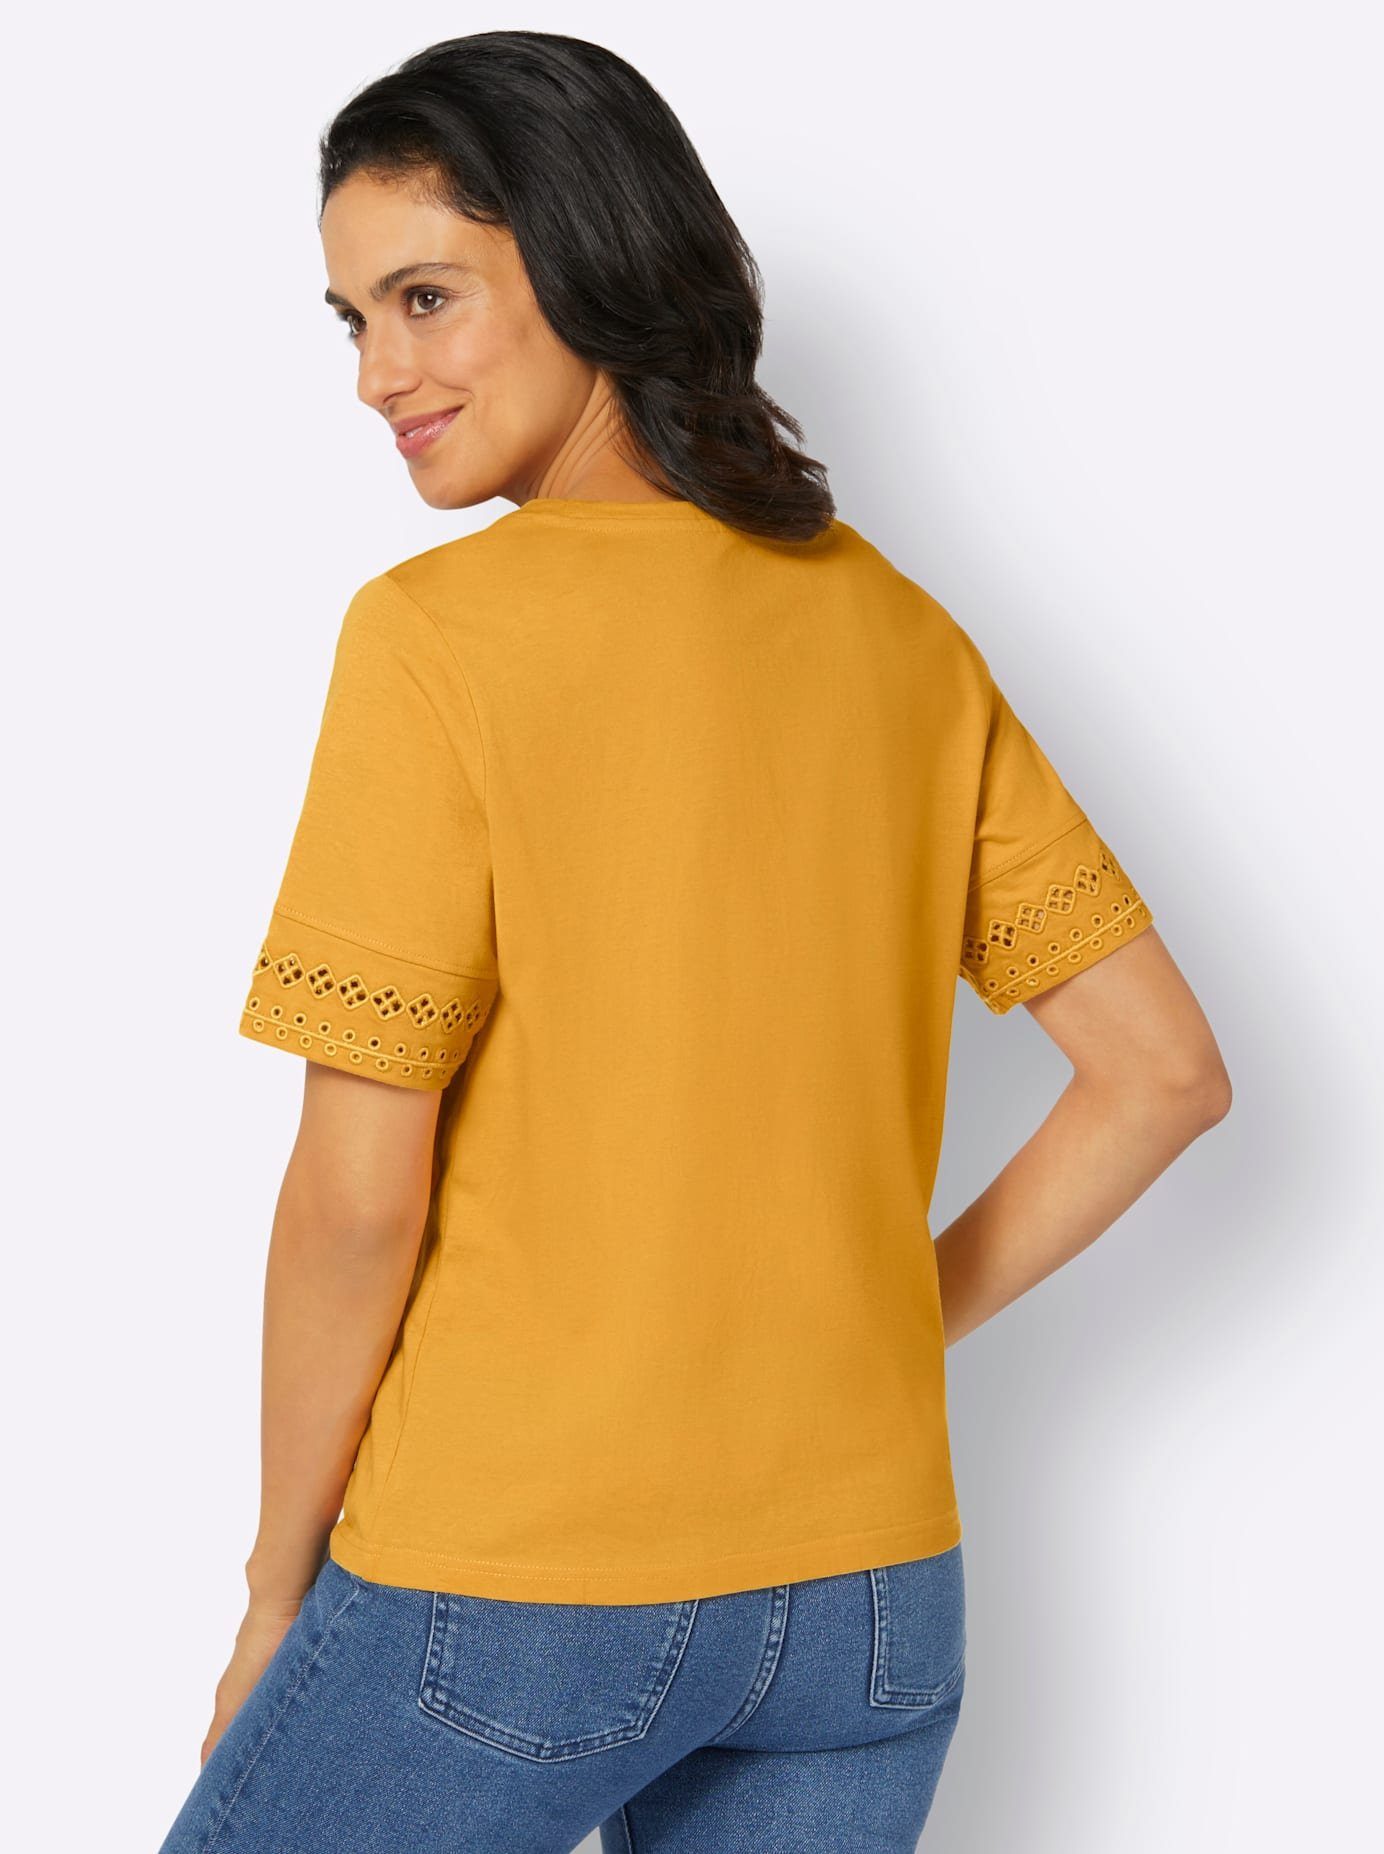 Classic Inspirationen Shirt met ronde hals Shirt (1-delig)